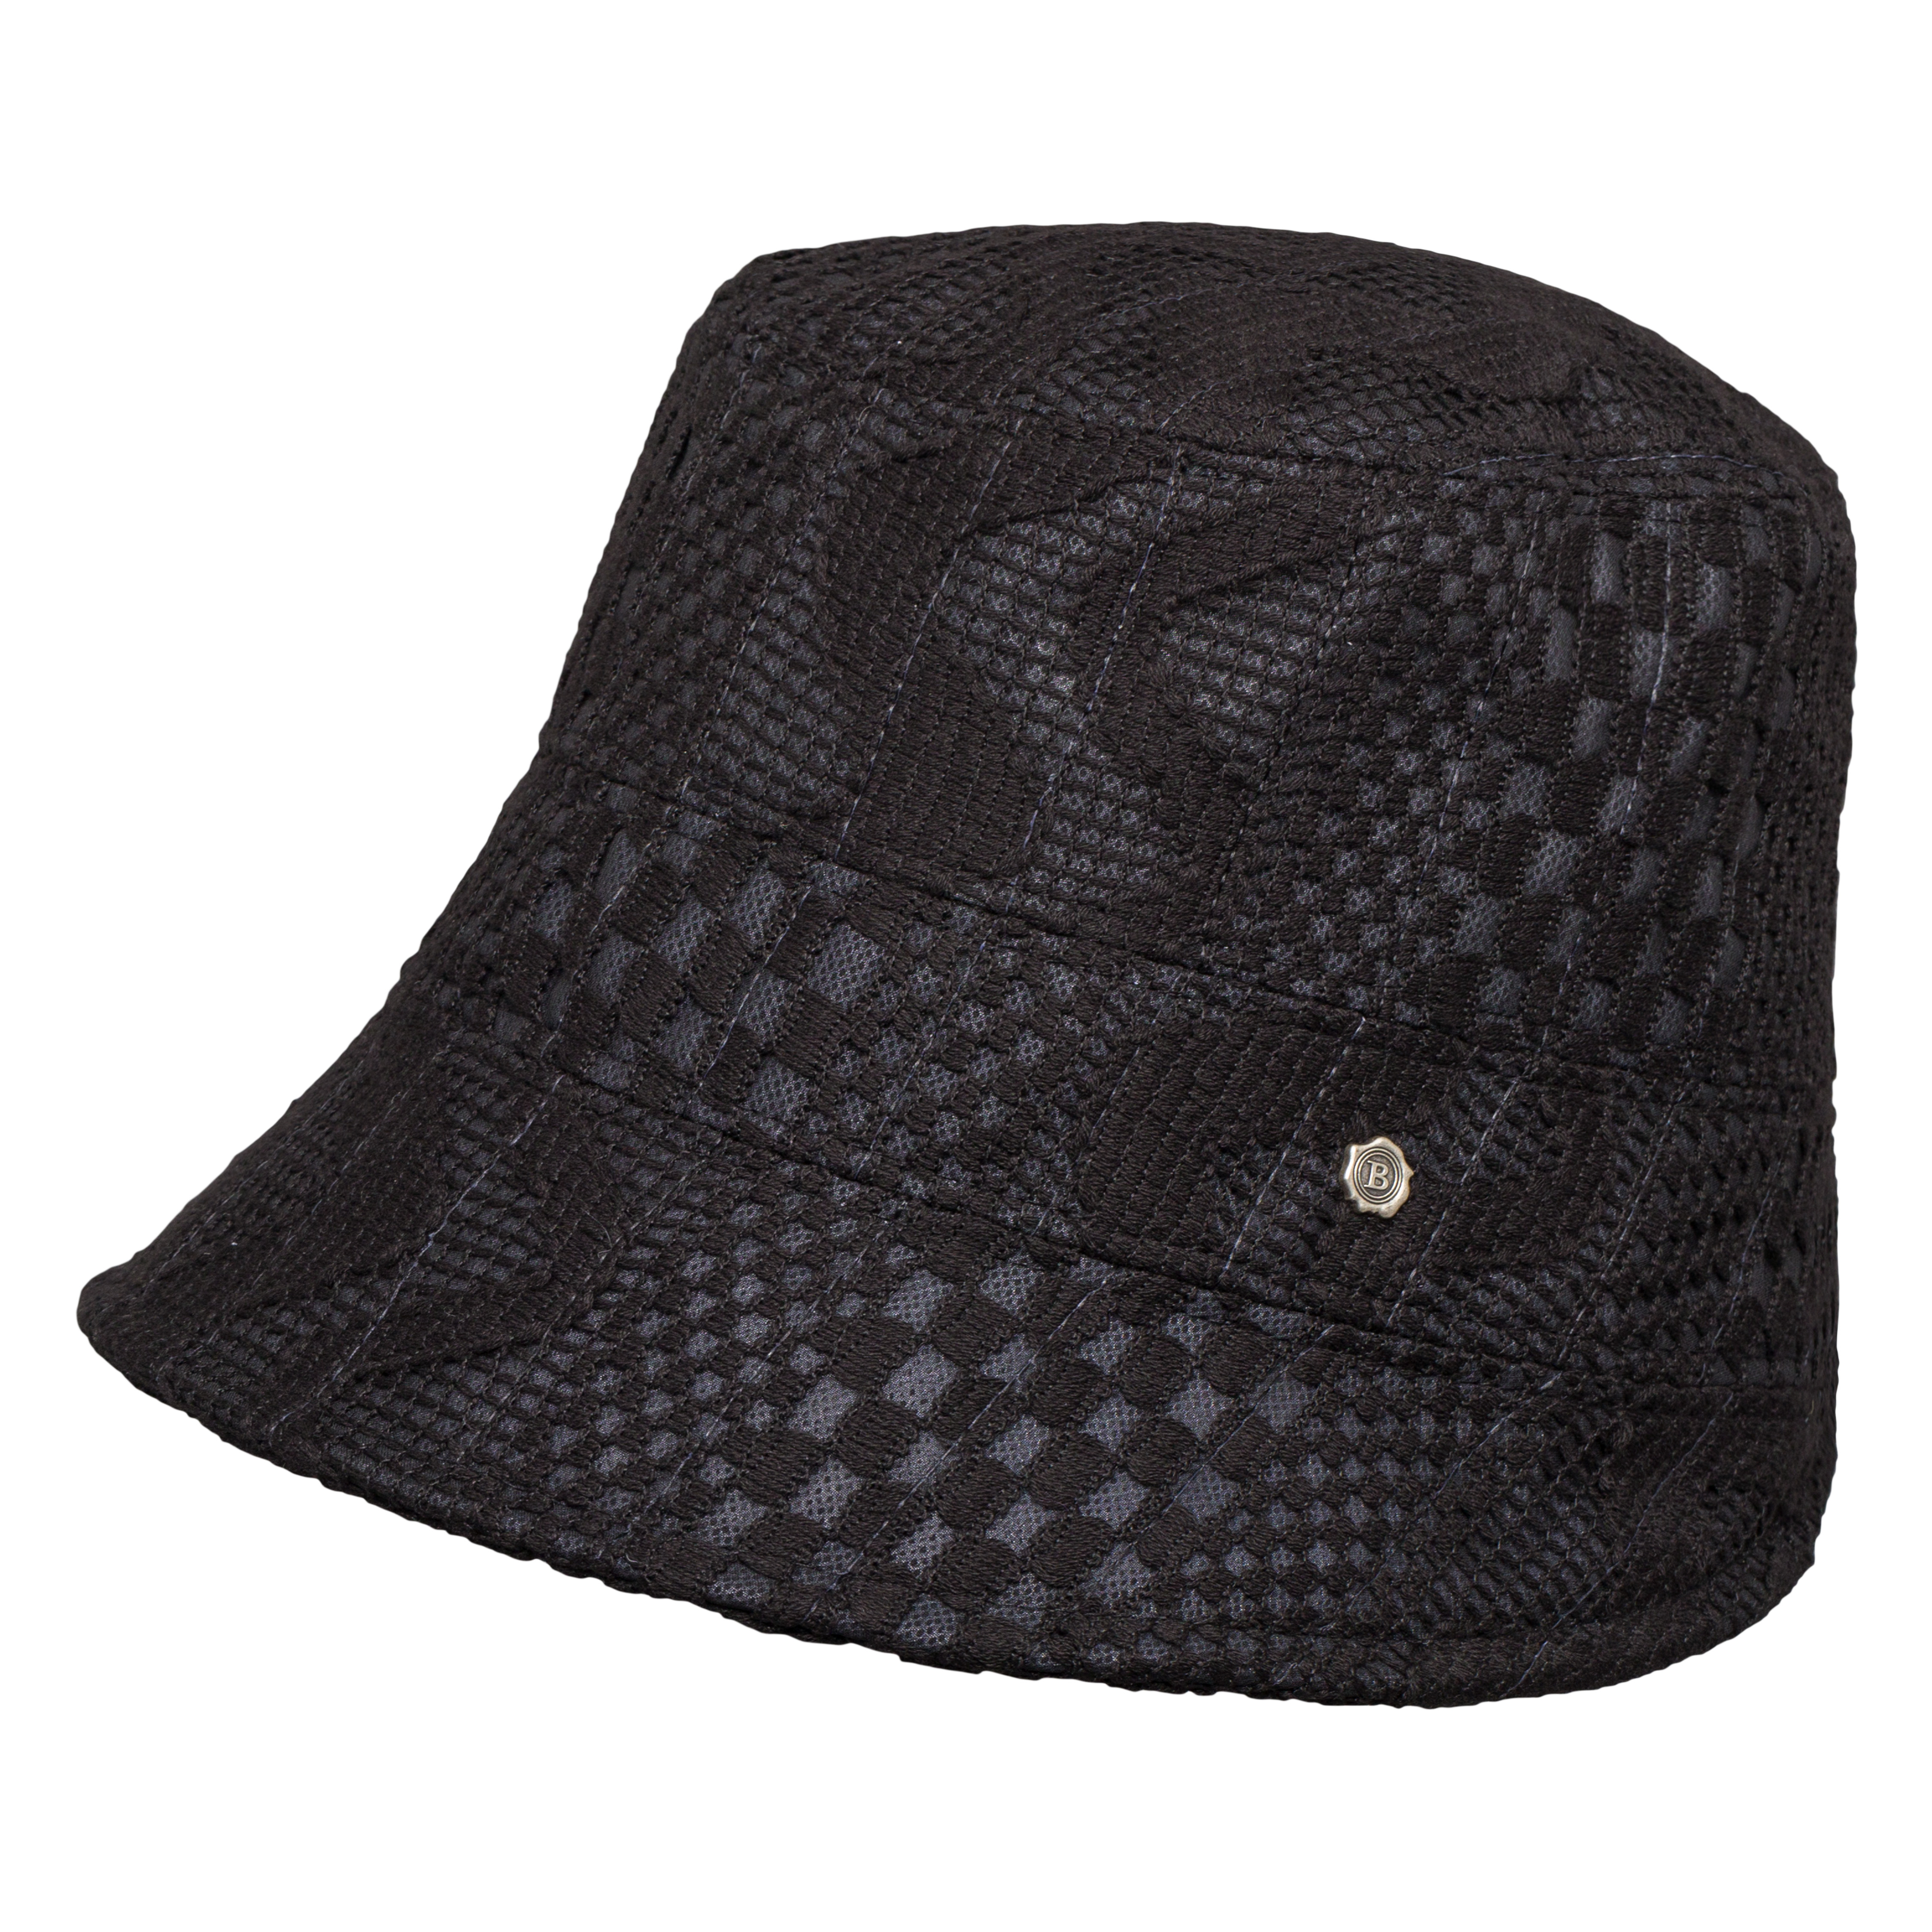 Le Petit Hat – Lace Black